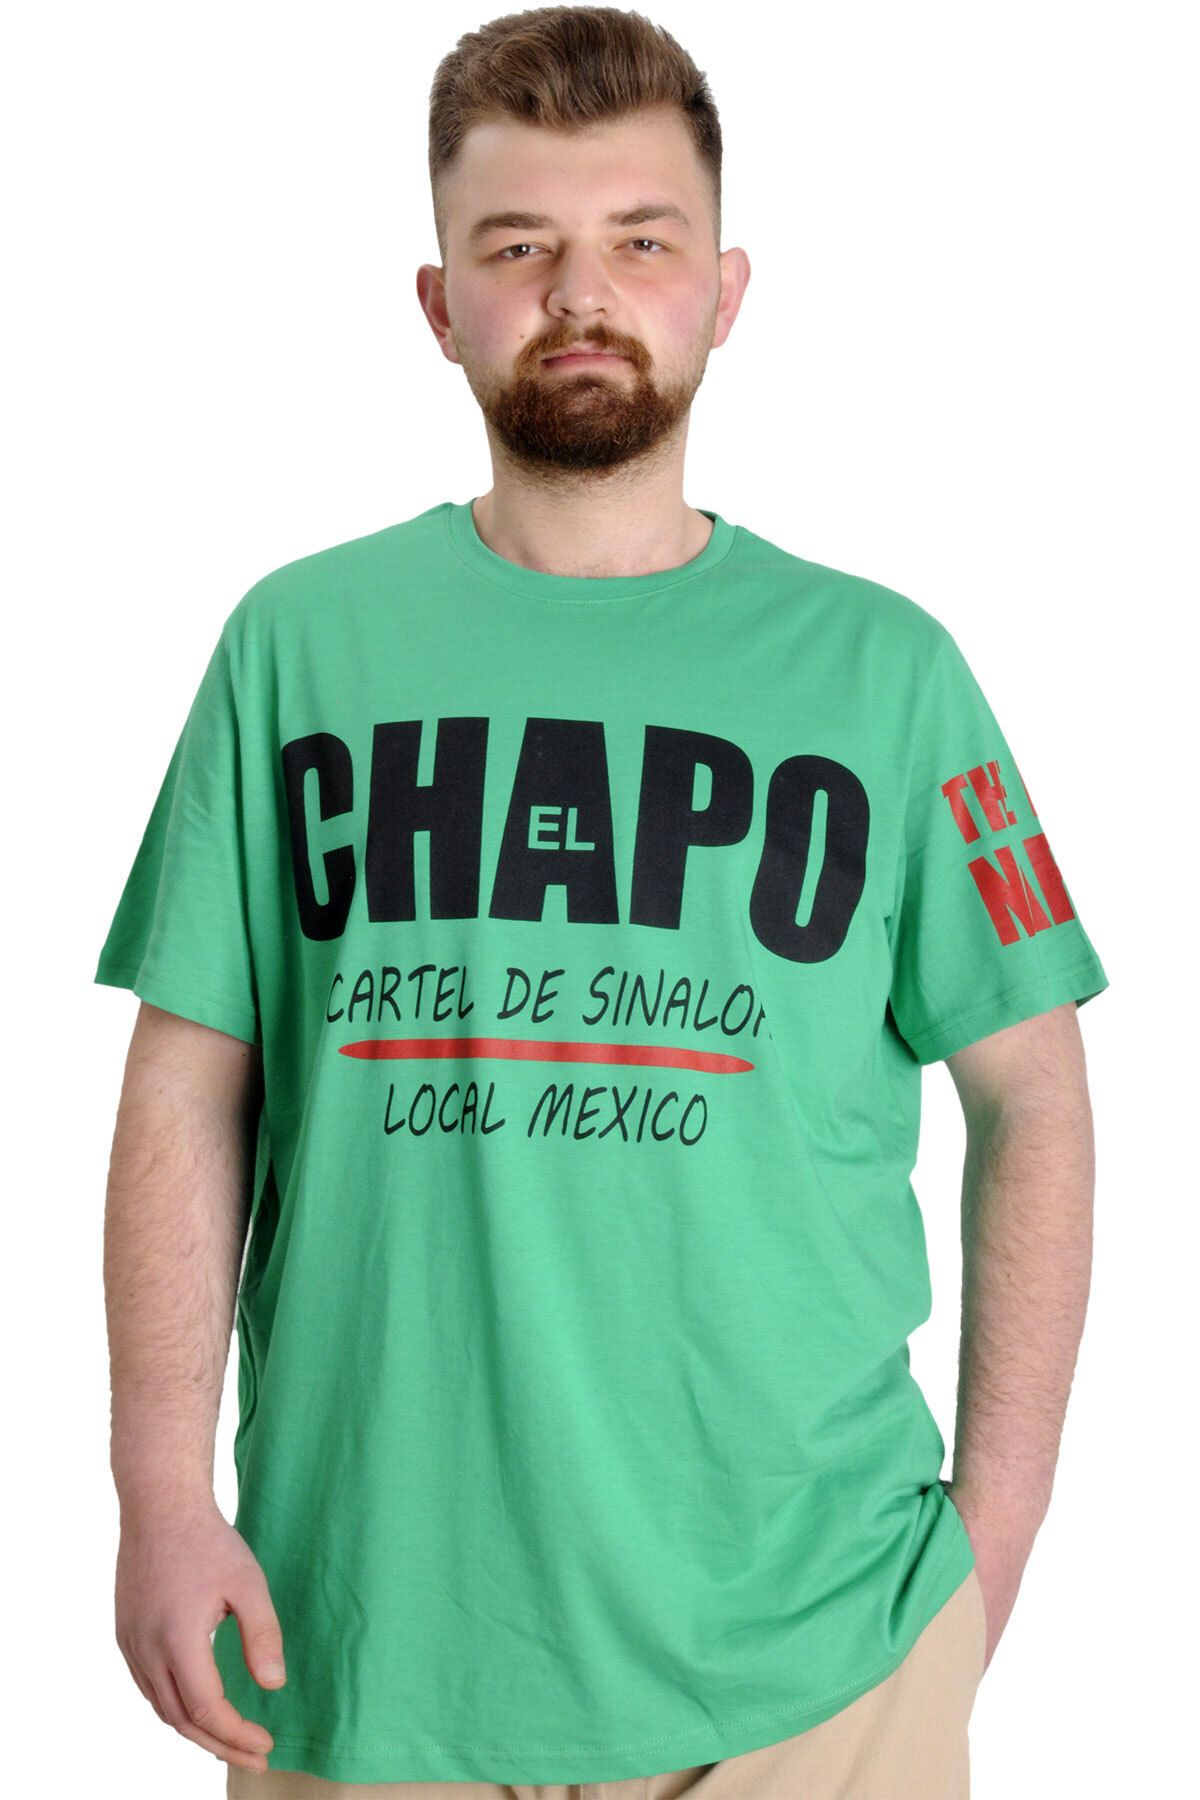 Modexl Mode Xl Büyük Beden Erkek T-shirt El Chapo 23154 Yeşil